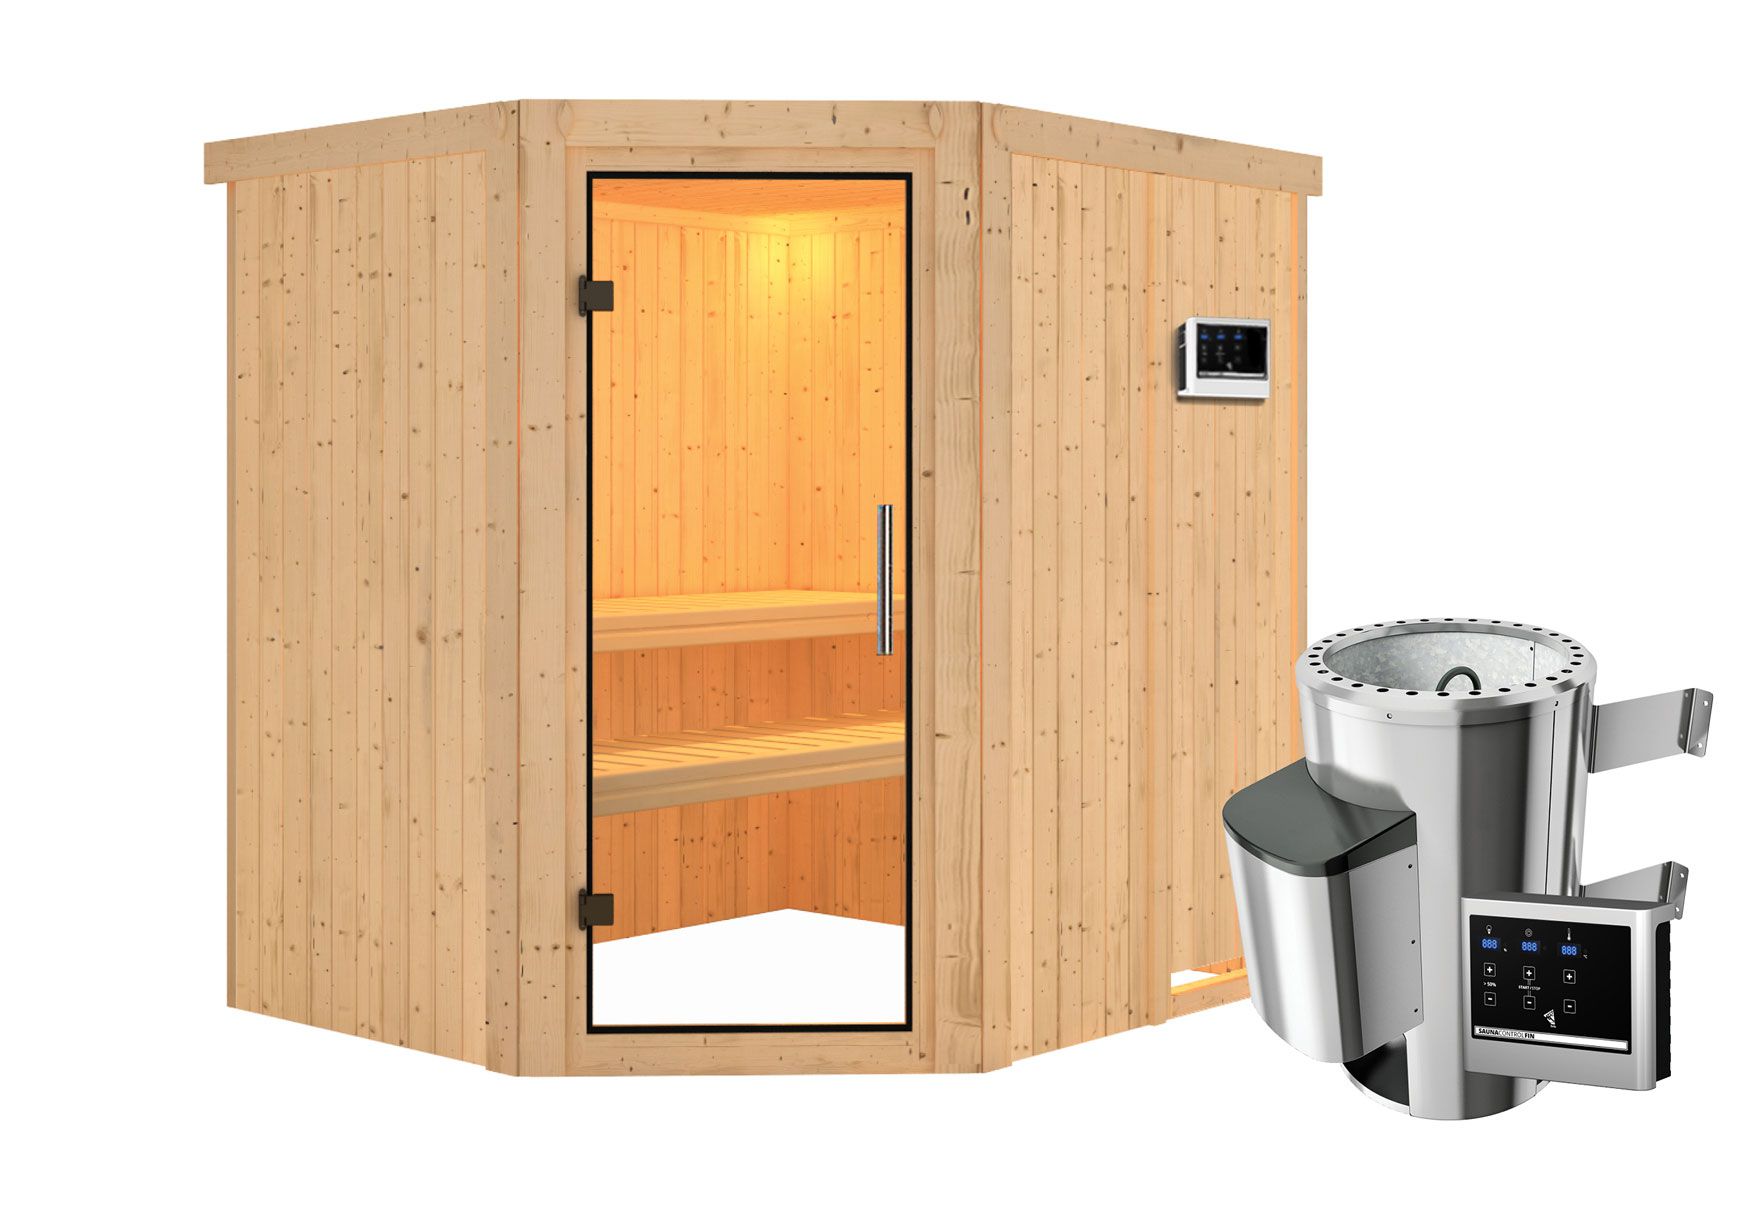 Sauna "Askjell" SET AKTION mit Klarglastür - Farbe: Natur, Ofen externe Steuerung easy 3,6 kW - 196 x 170 x 198 cm (B x T x H)